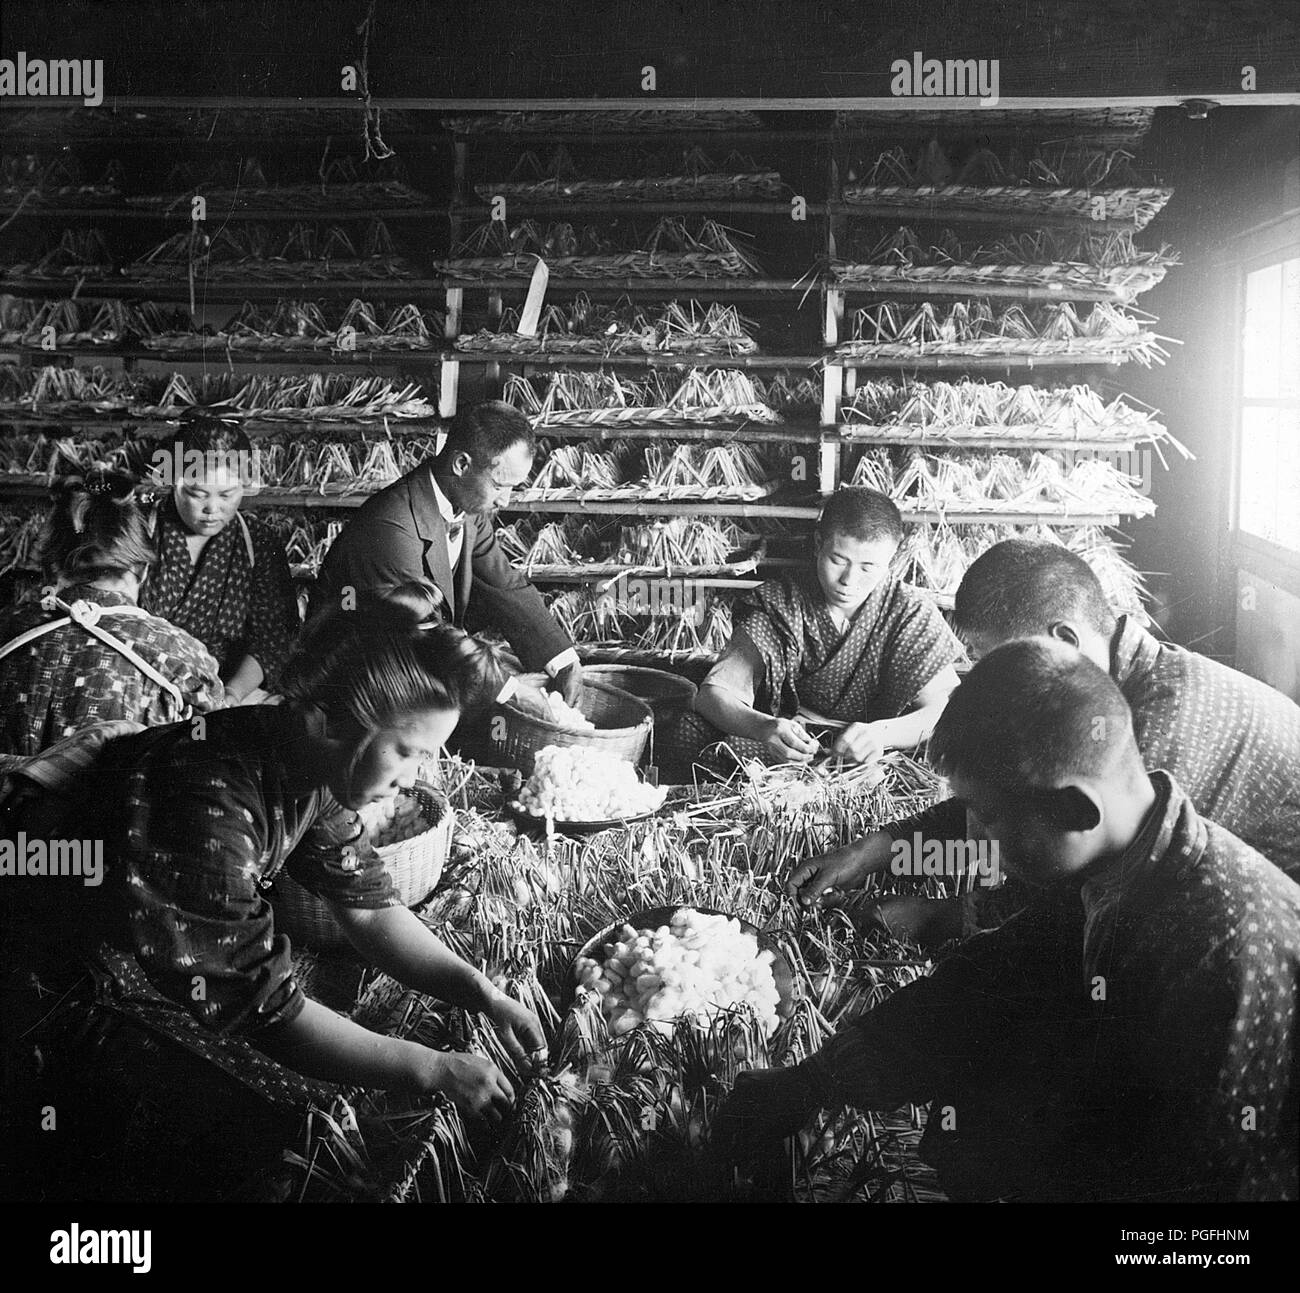 [C. 1900 Japan - Seide Industrie] - Trennung Kokons aus ihren Nestern. 20. Jahrhundert vintage Glas schieben. Stockfoto